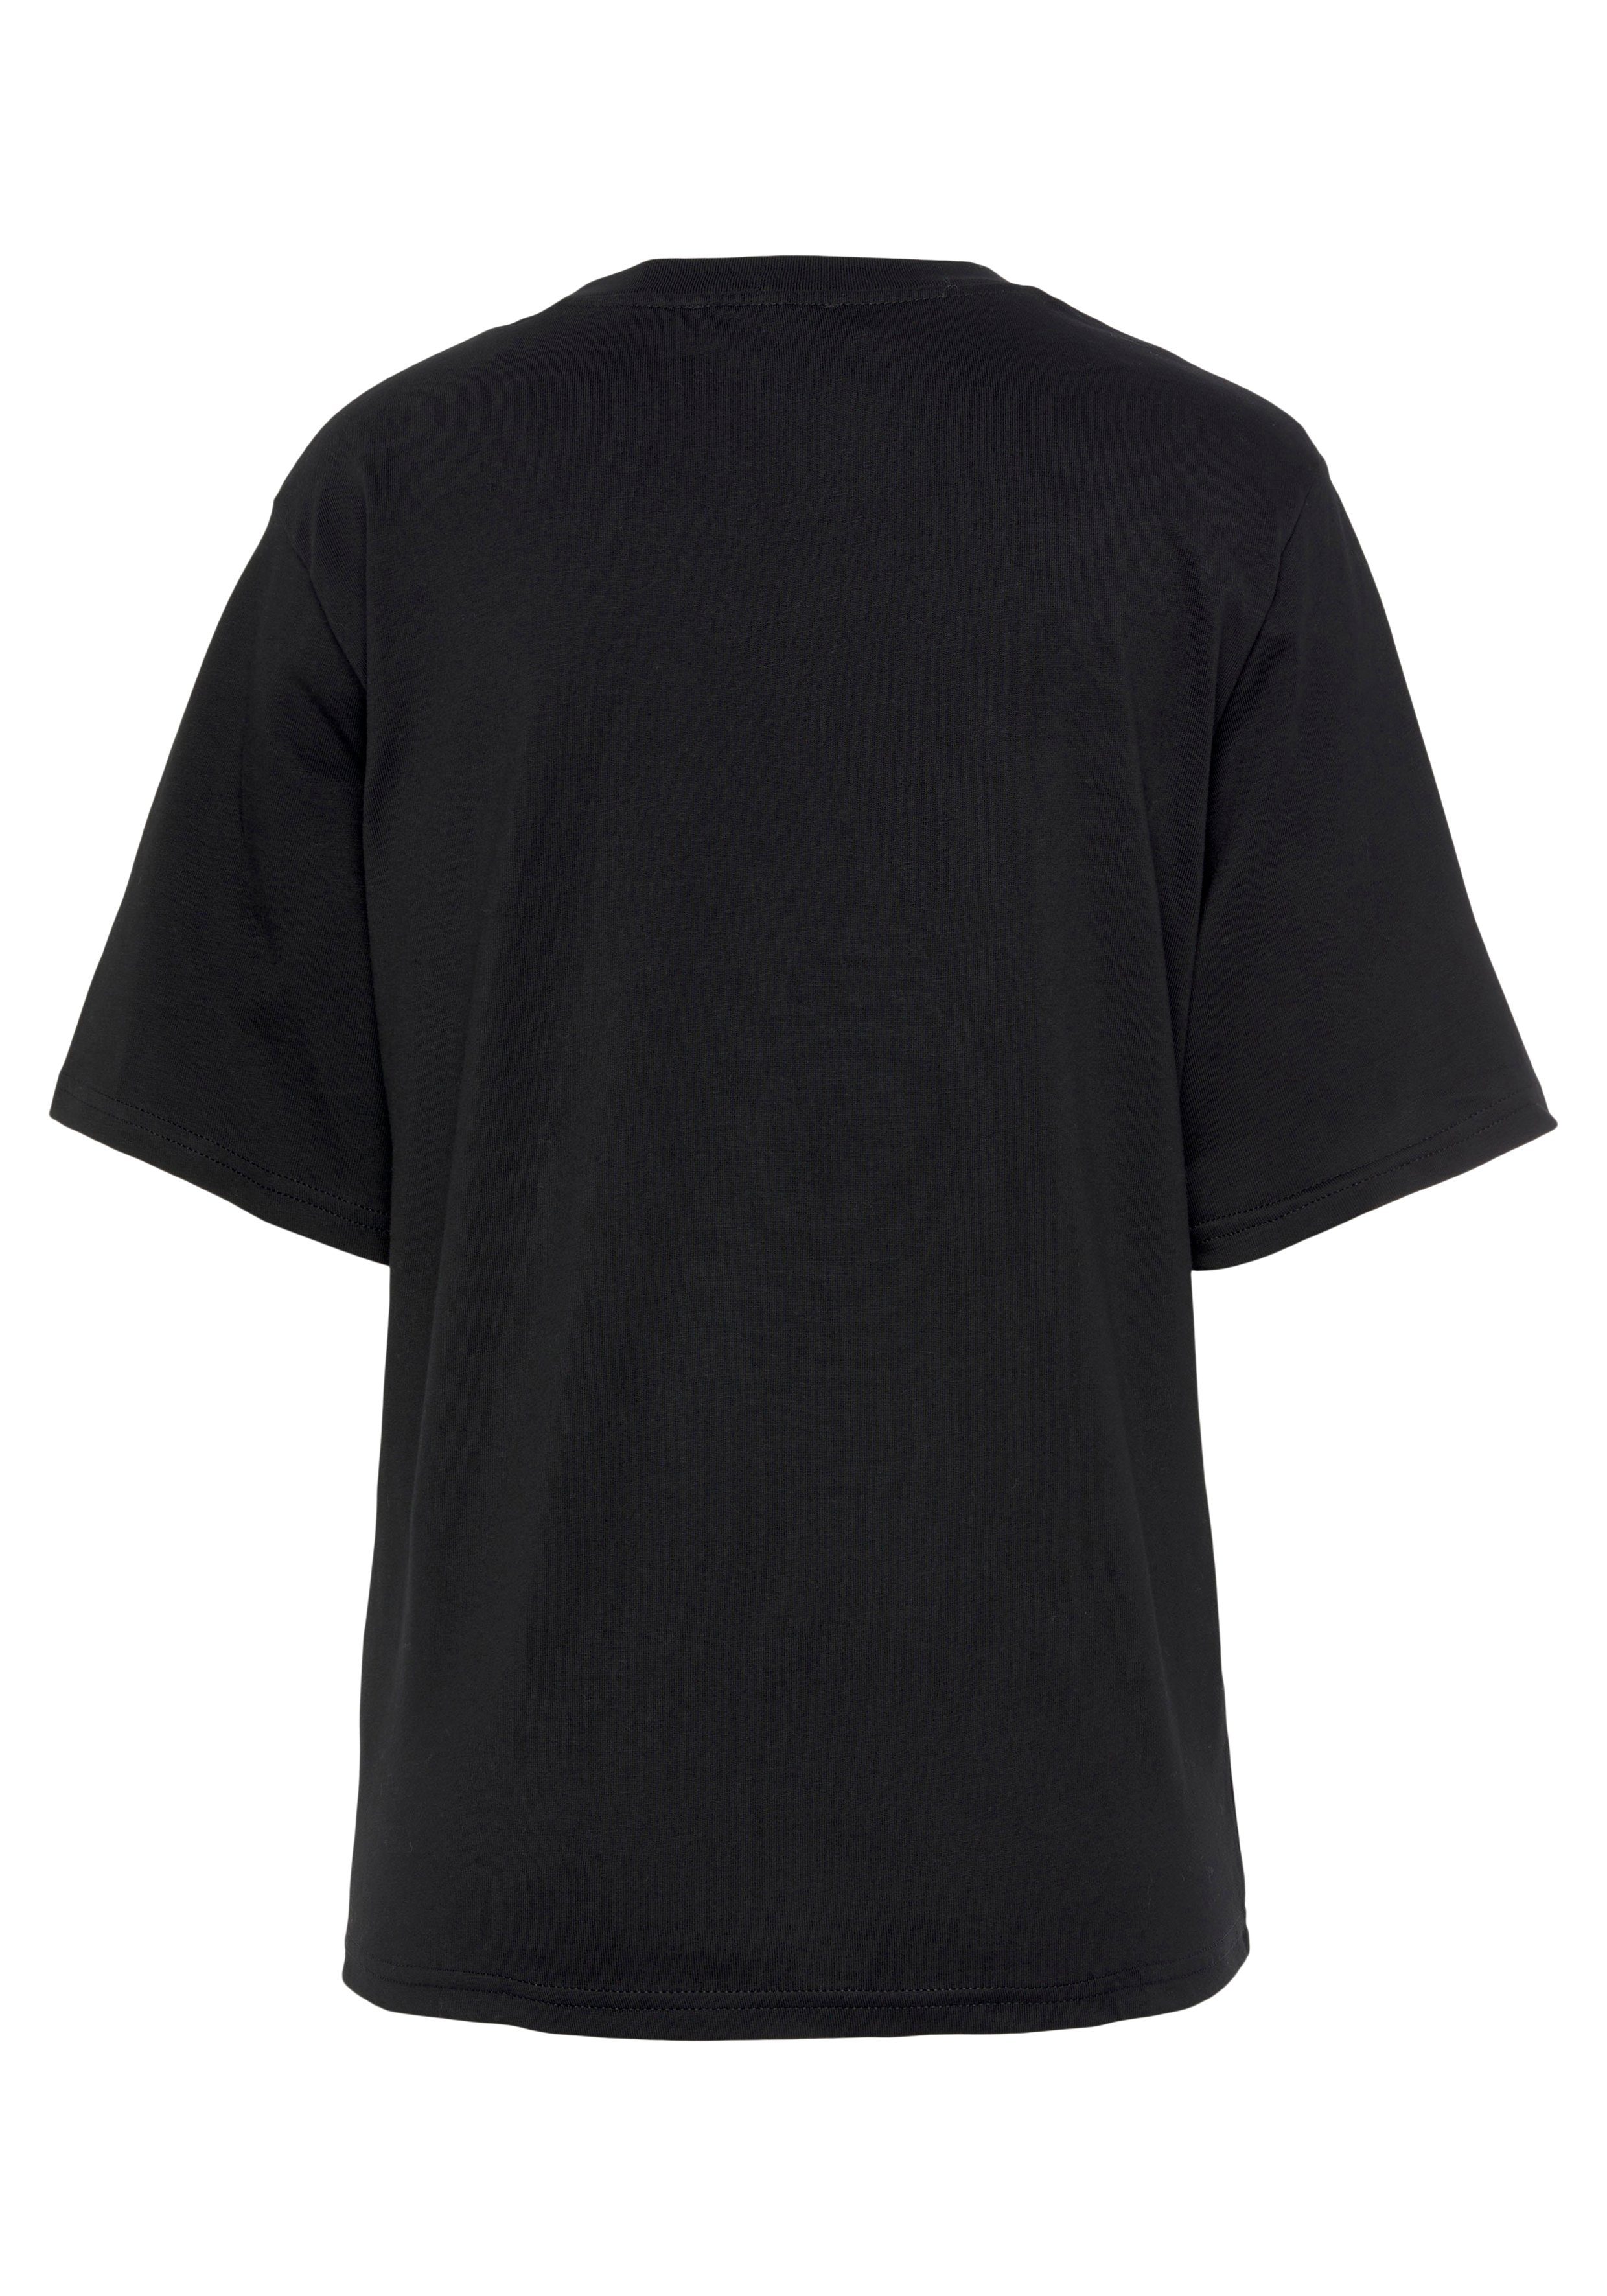 mit schwarz Brust auf Colors United of T-Shirt der Logodruck Benetton